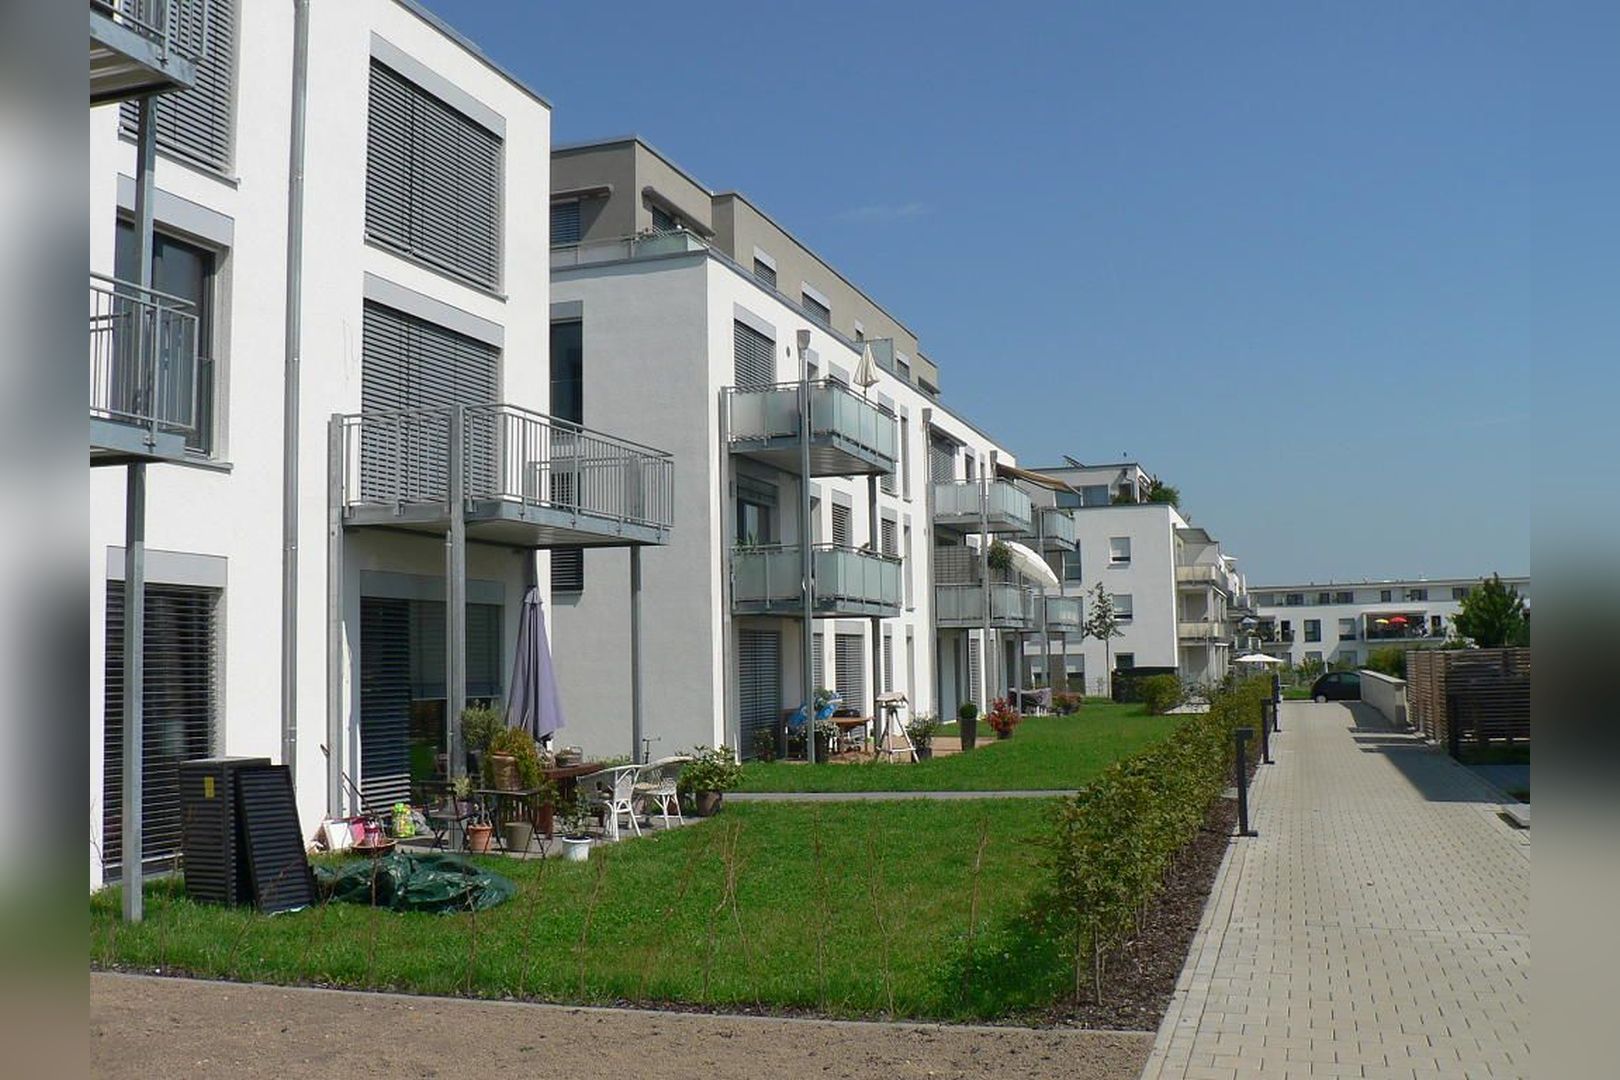 Immobilie Nr.Köln 004.1 - 4-Zimmer-EG-Wohnung mit Terrasse, Garten und TG-Stellplatz - Bild main.jpg